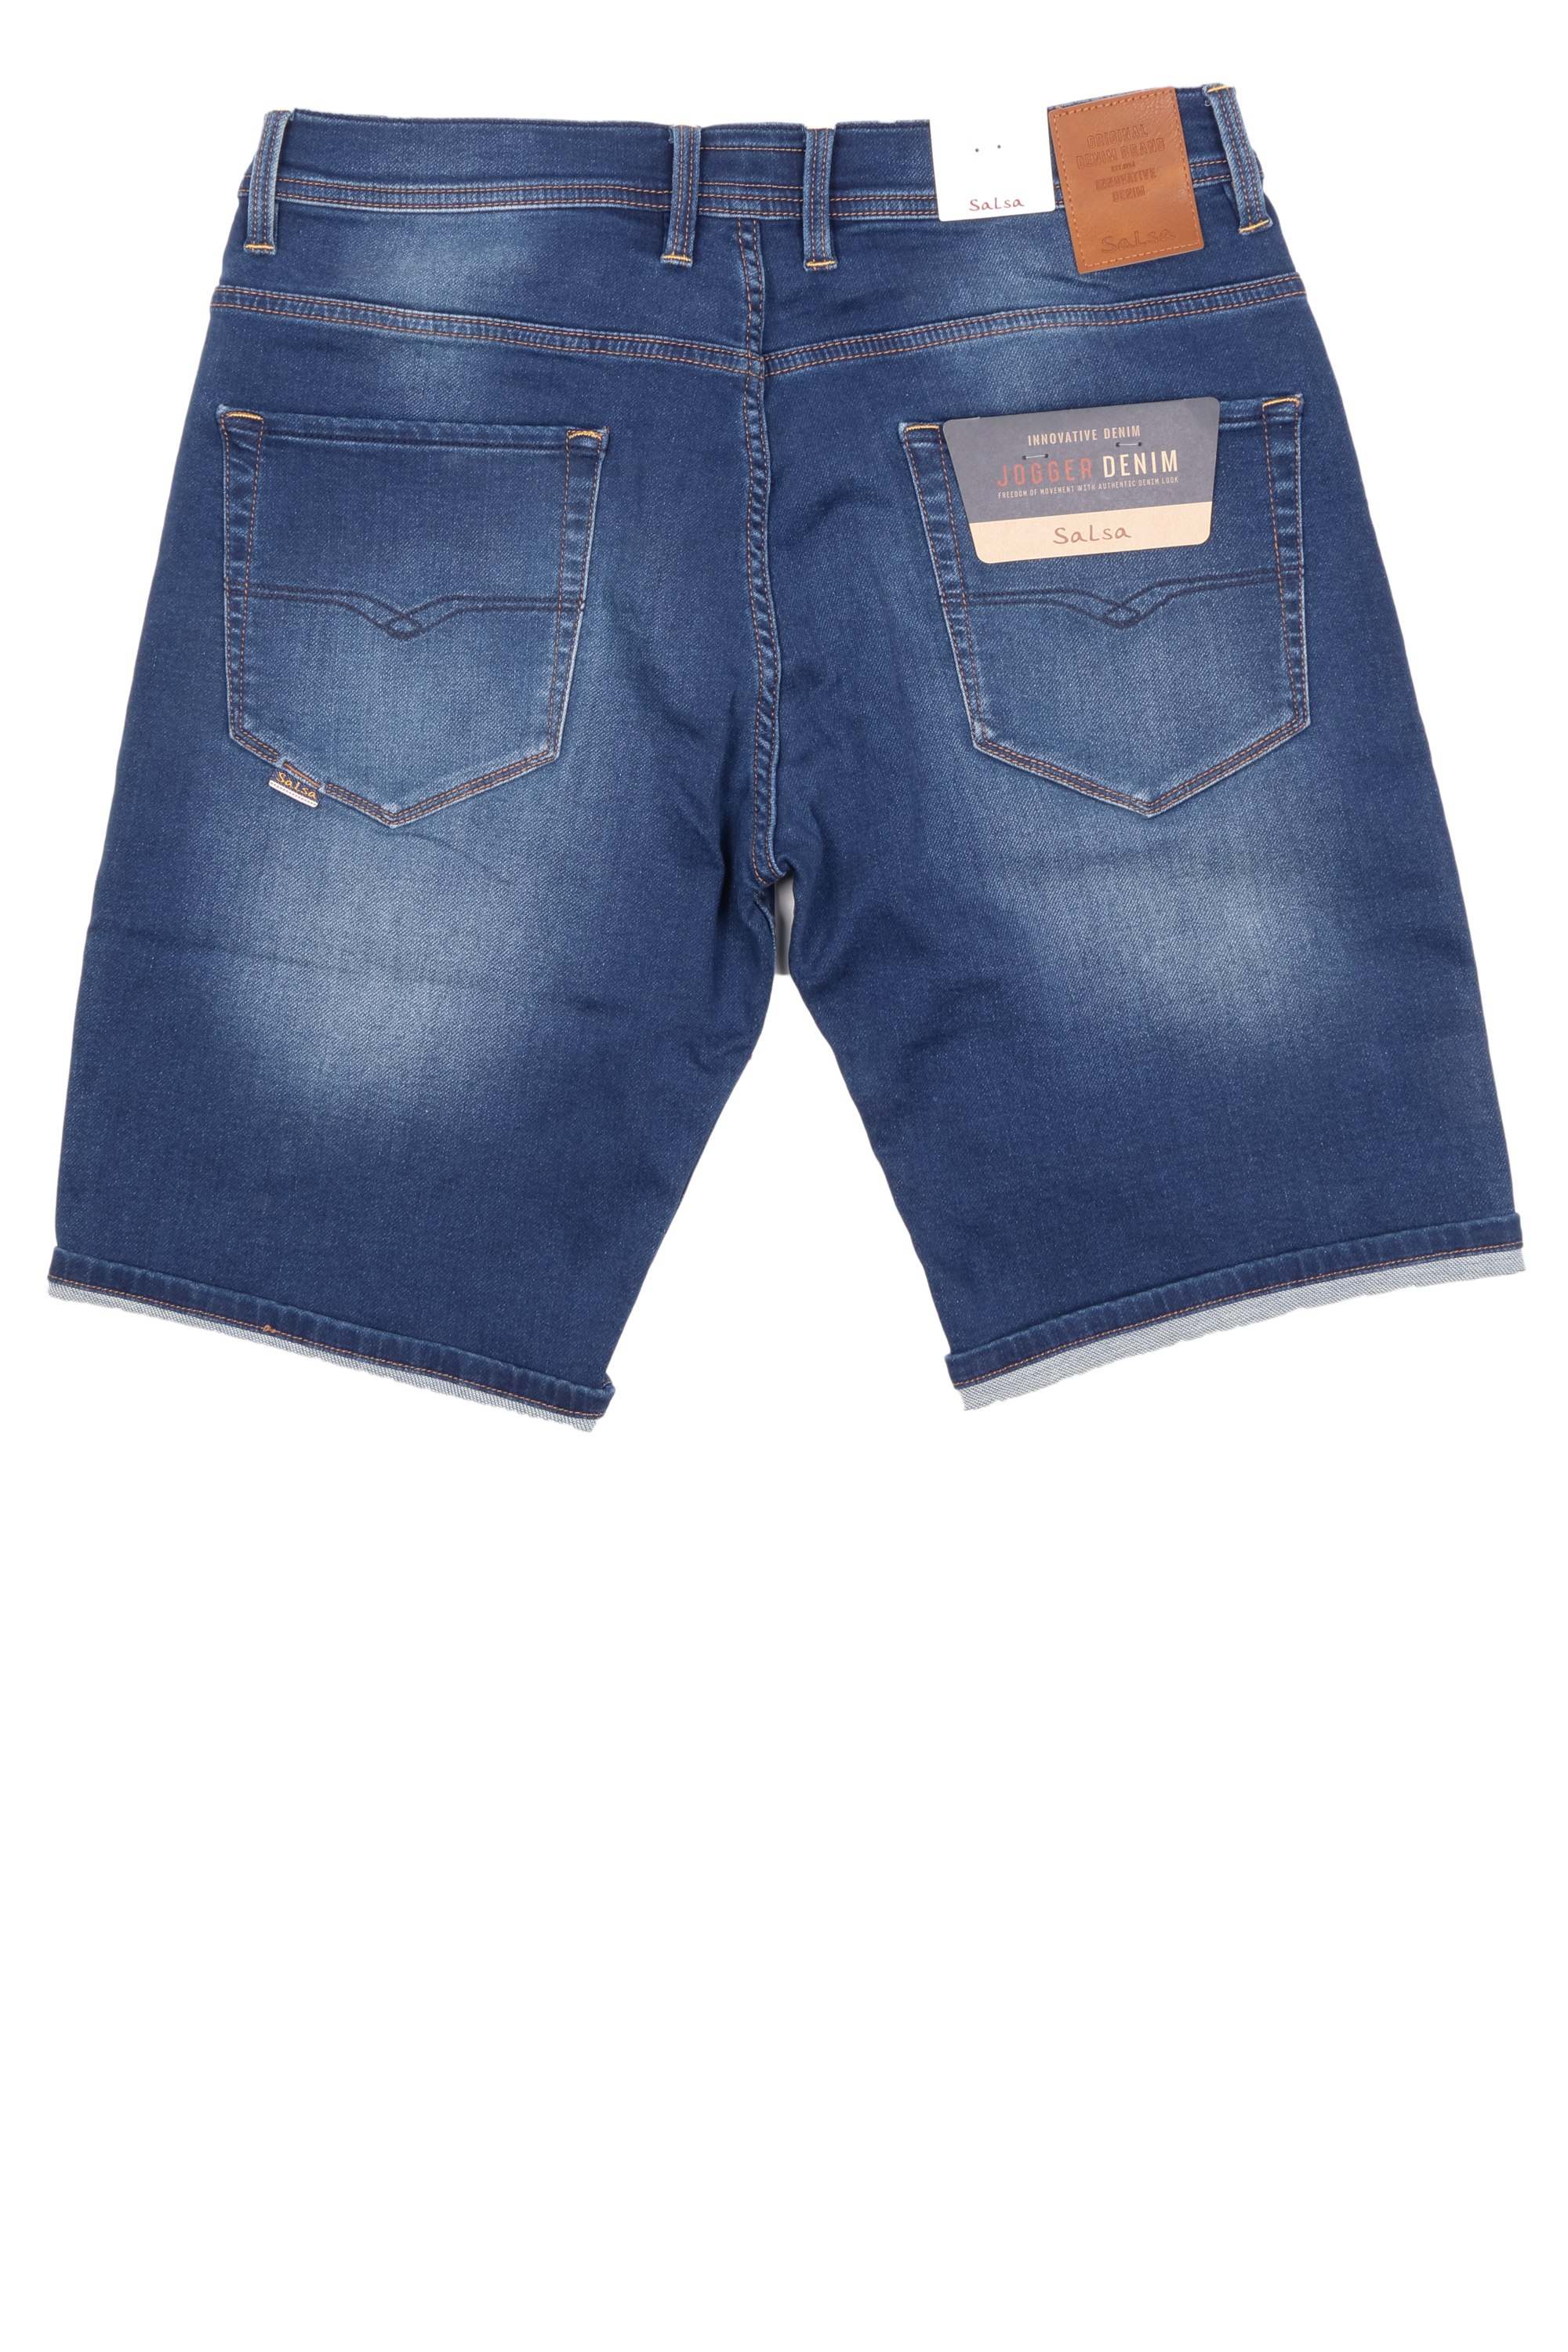 Salsa Herren Jeans Shorts Jog-Denim - blau 31